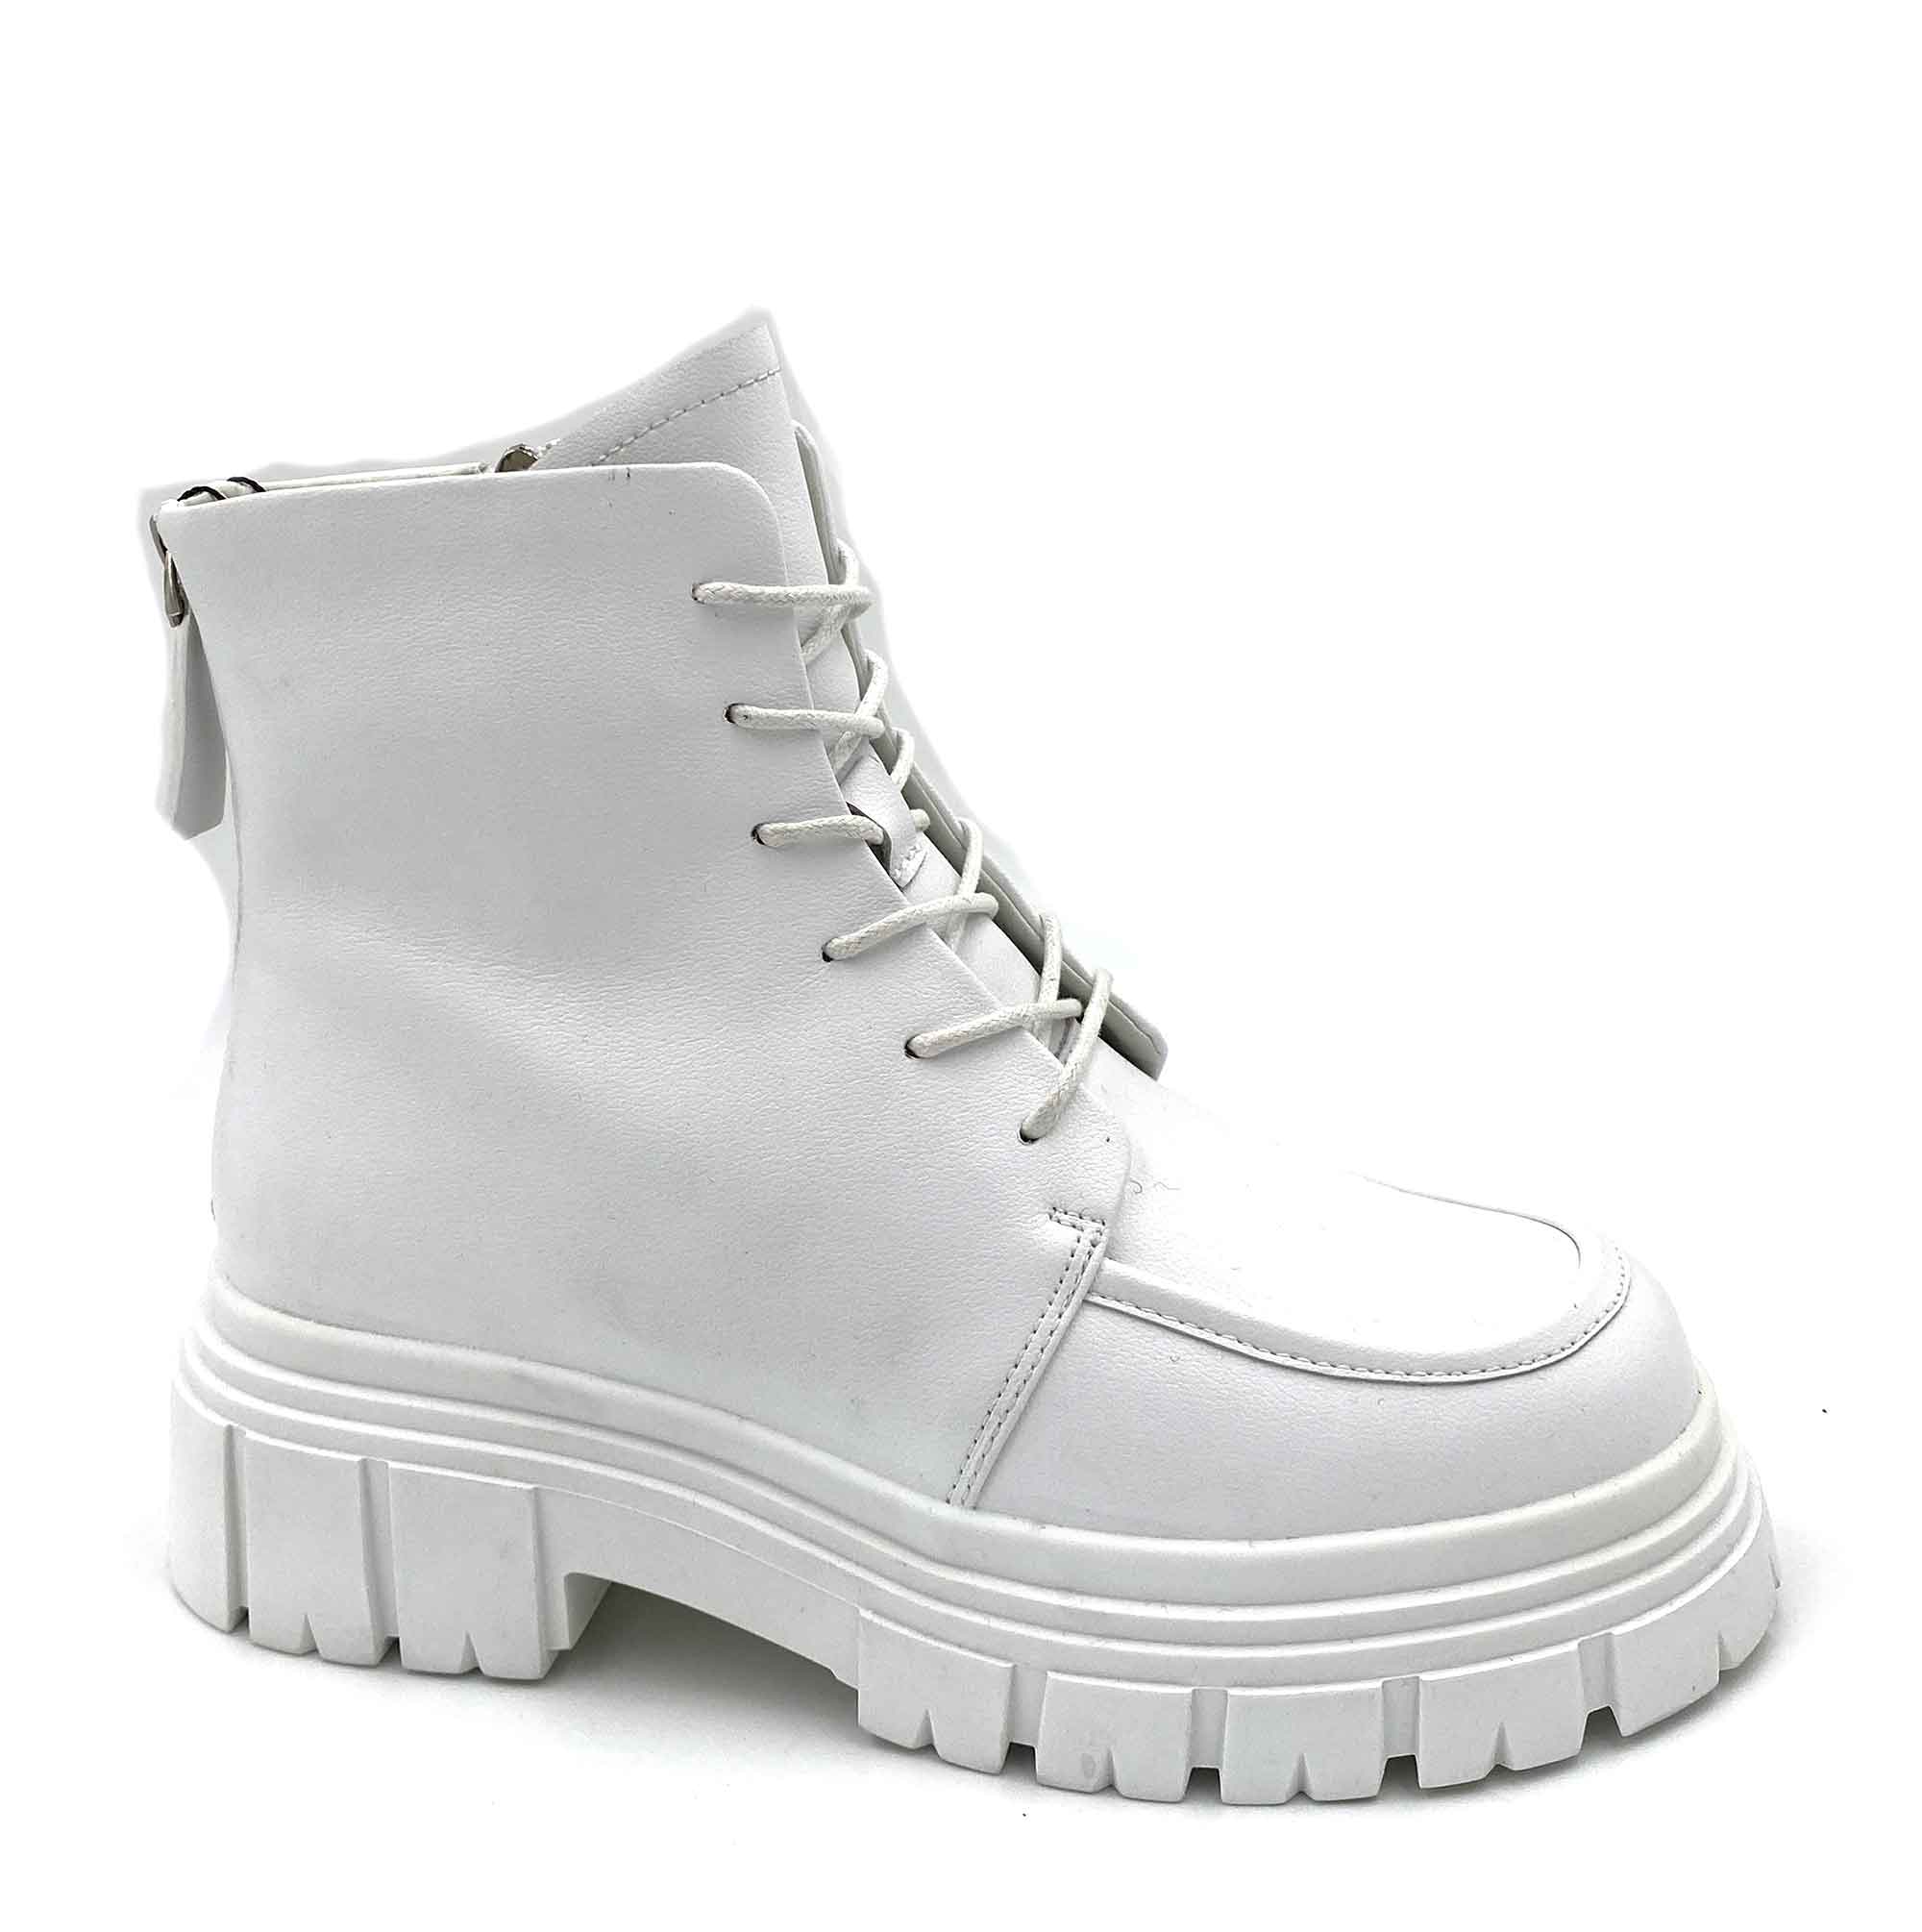 Ботинки зимние женские Тофа - 30363 купить в интернет-магазине с доставкой по России